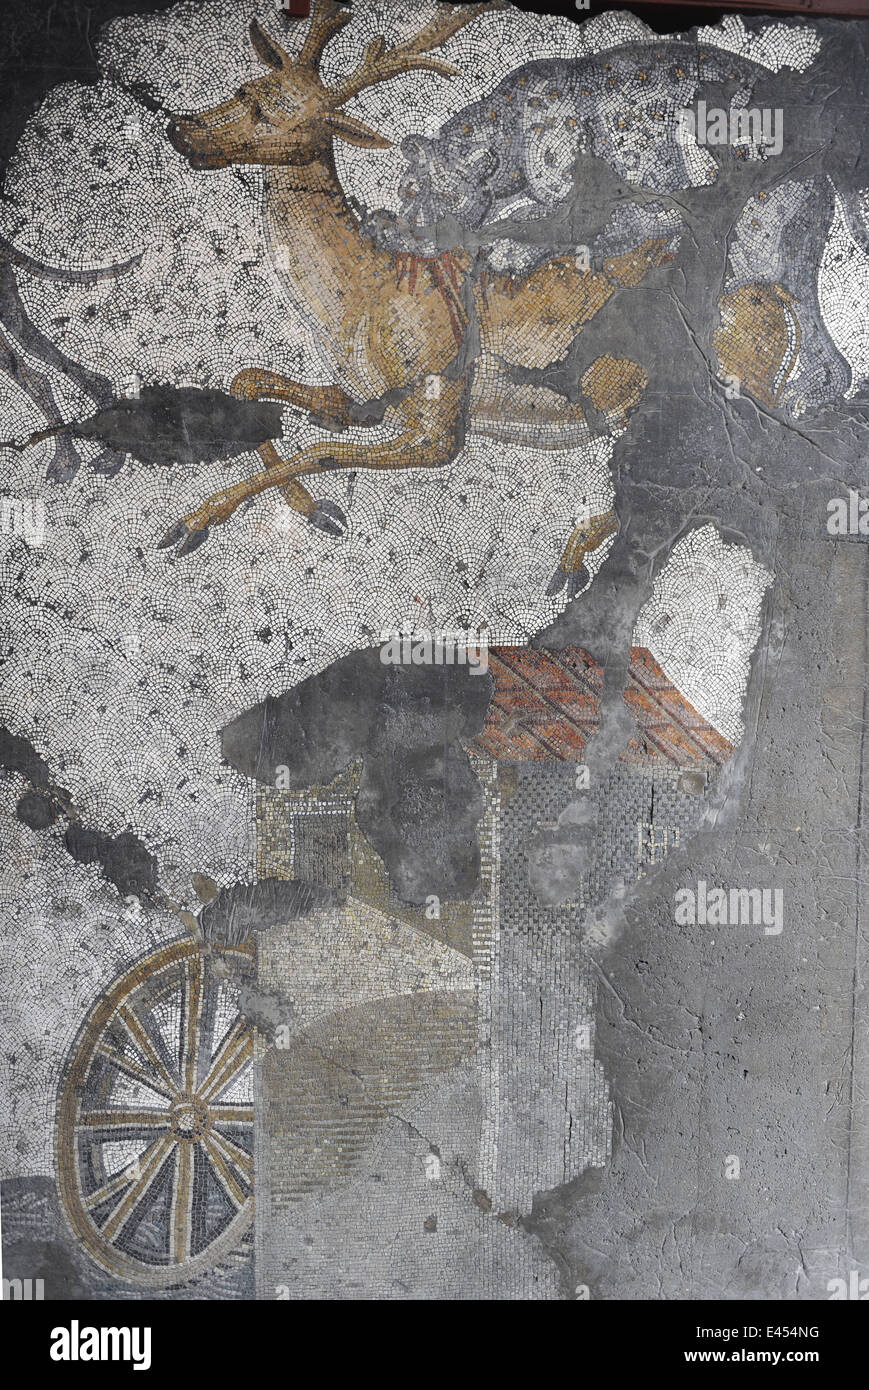 Großer Palast Mosaik-Museum. 4.-6. Jahrhunderte. Mosaik-Darstellung eine Wassermühle und ein Angriff auf einen Hirsch Leopard. Istanbul. Turkei. Stockfoto